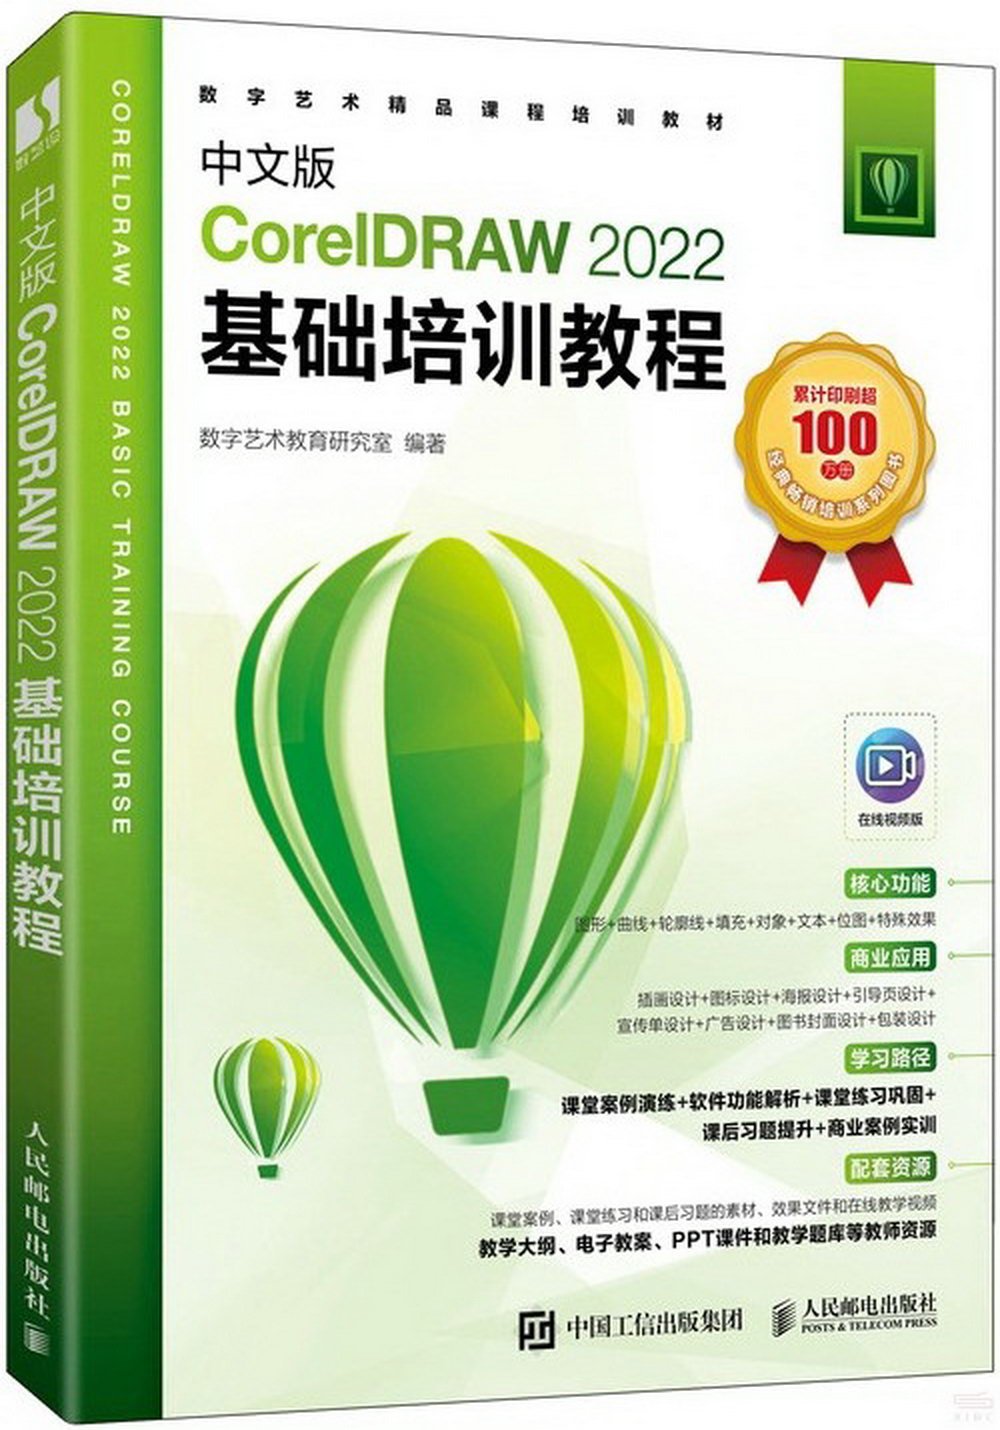 中文版CorelDRAW 2022基礎培訓教程